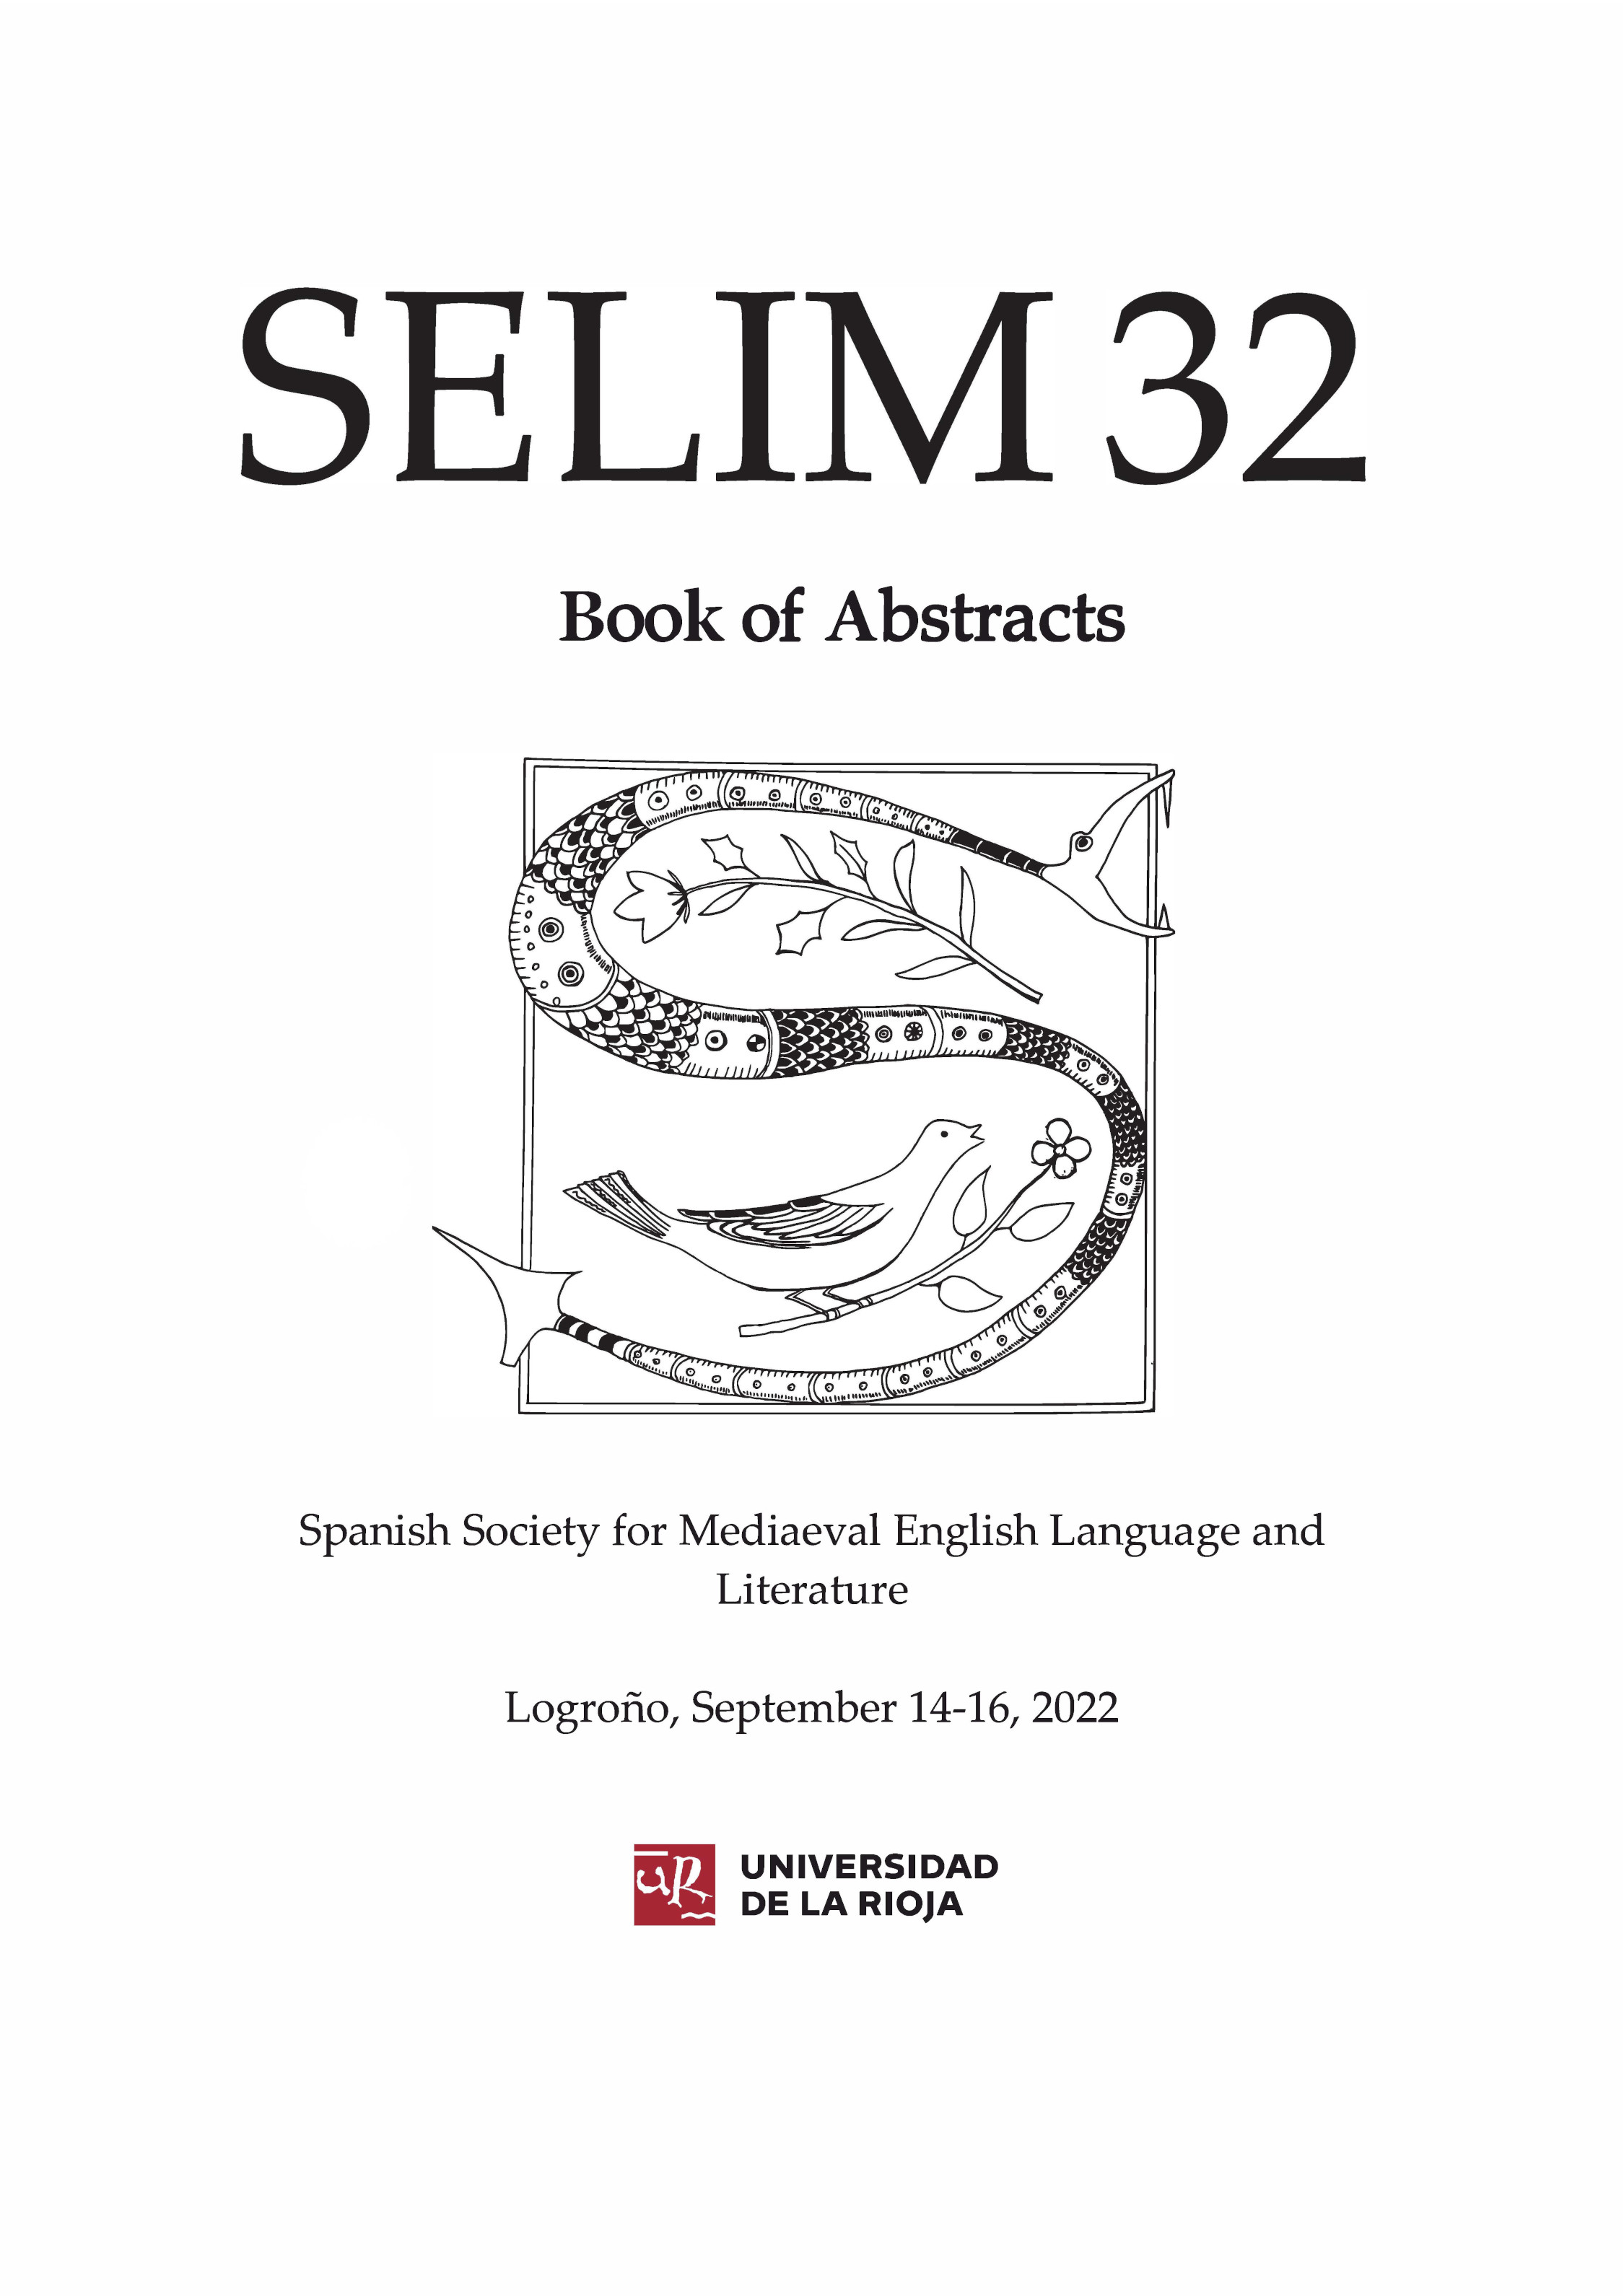 Imagen de portada del libro SELIM 32. Book of Abstracts